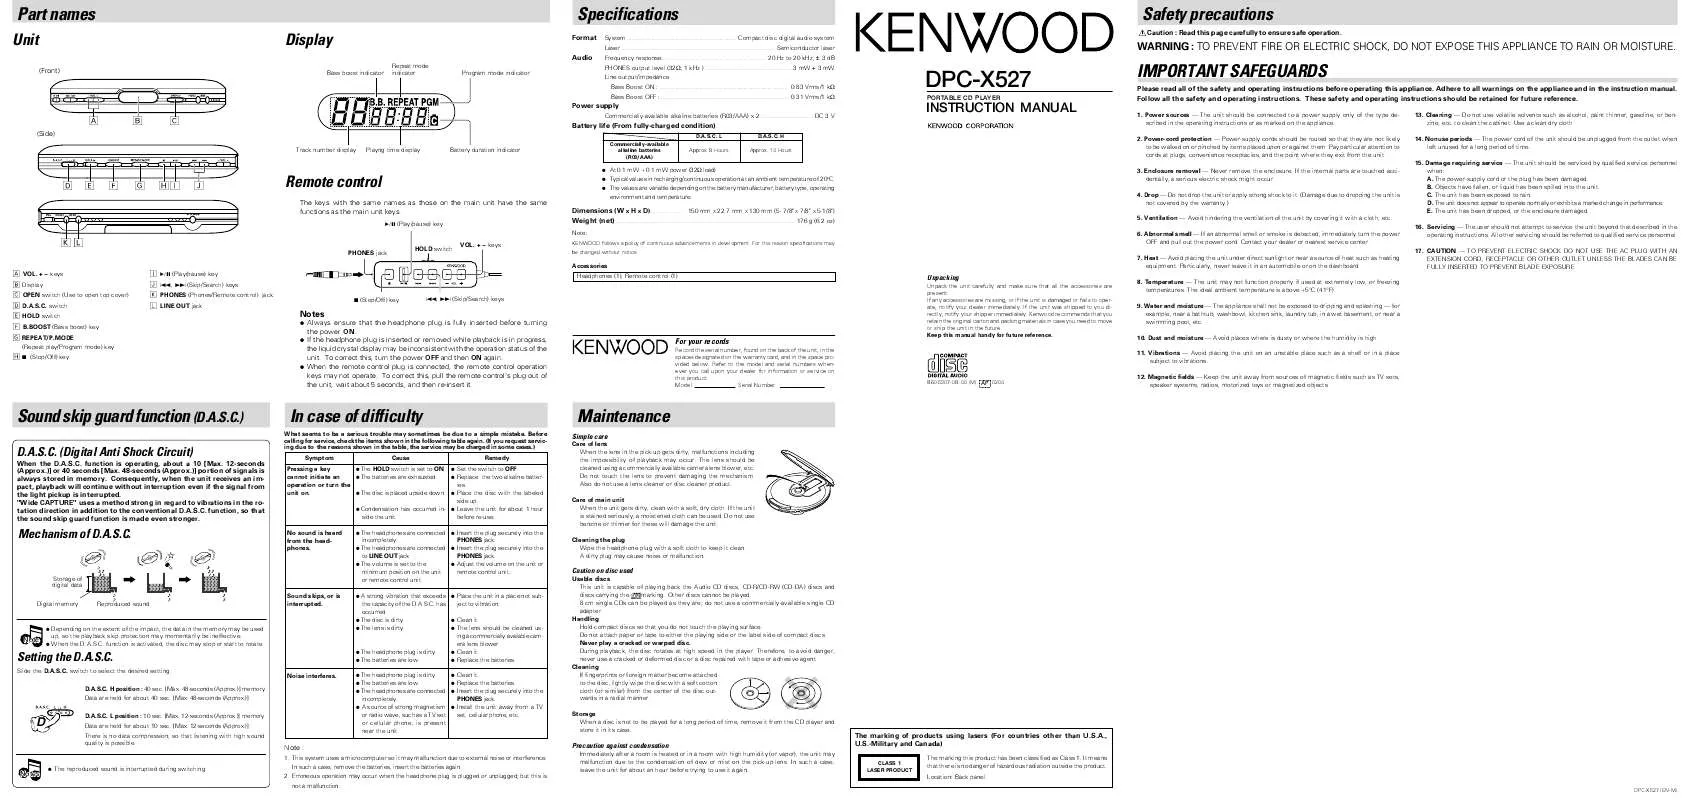 Mode d'emploi KENWOOD DPC-X527